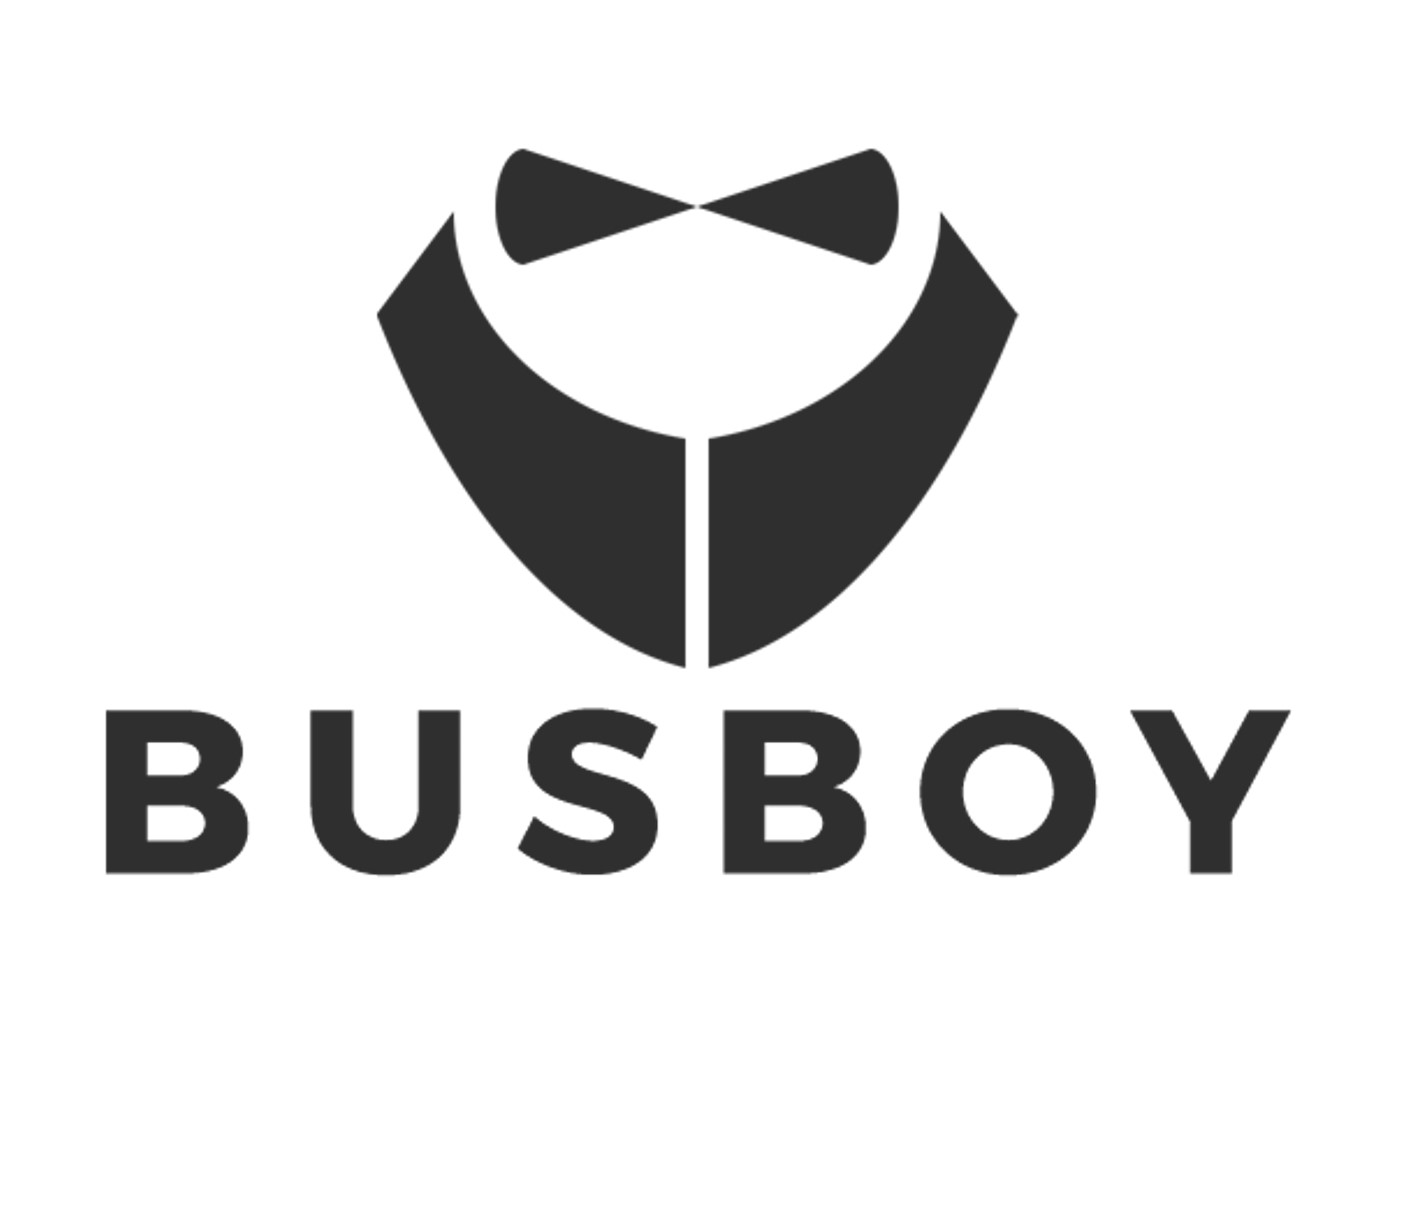 busboy etymology